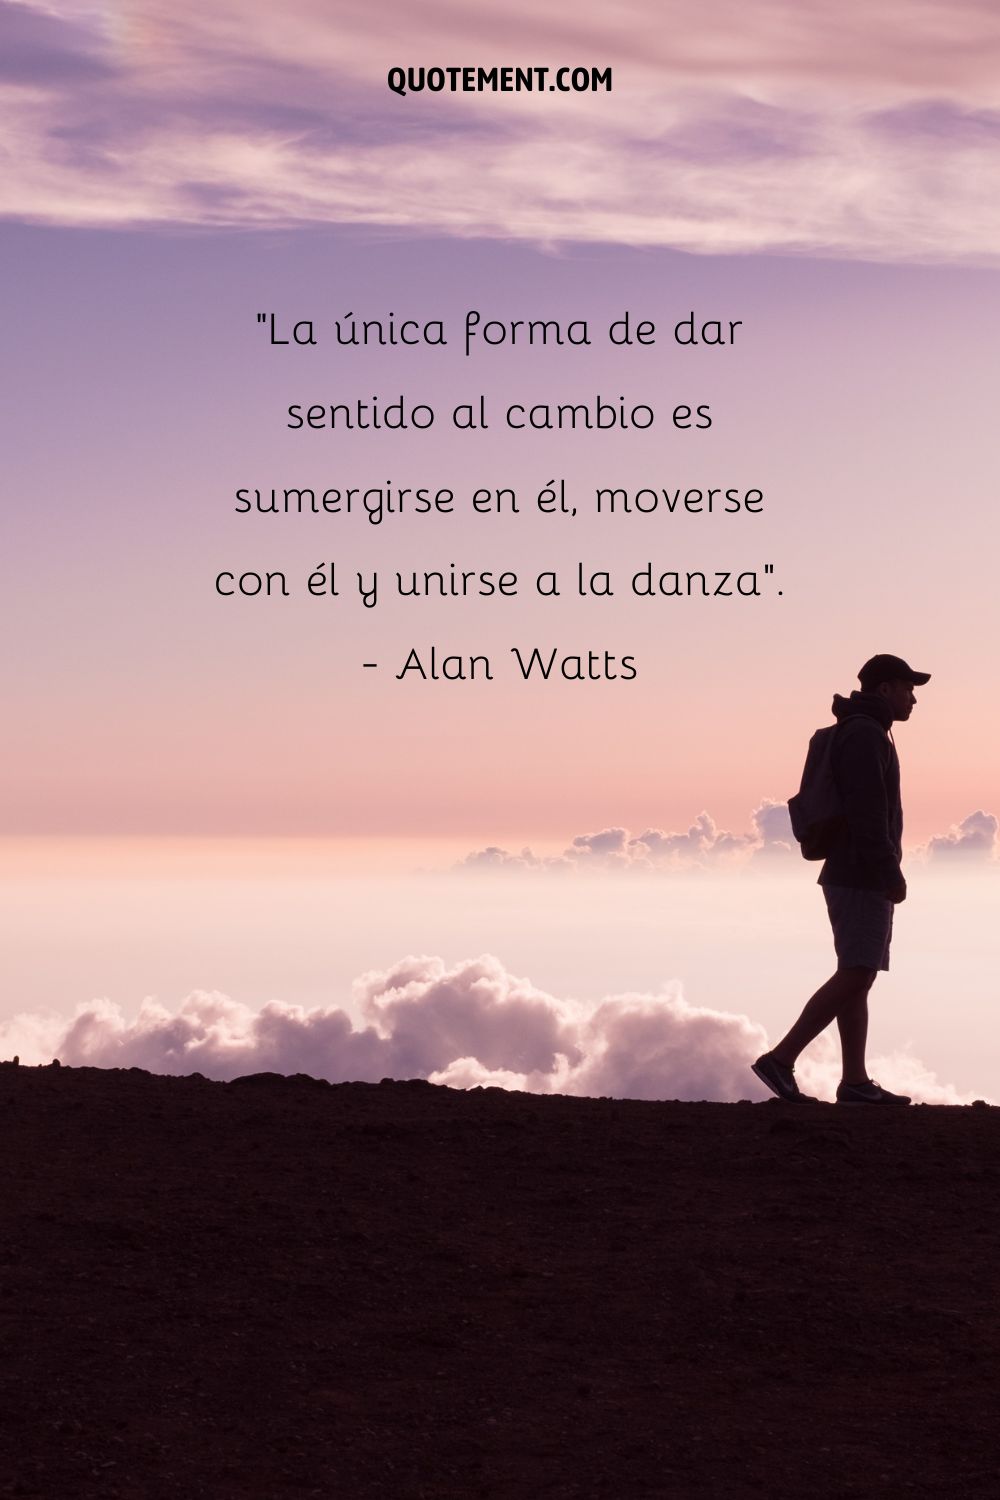 "La única forma de dar sentido al cambio es sumergirse en él, moverse con él y unirse a la danza". - Alan Watts